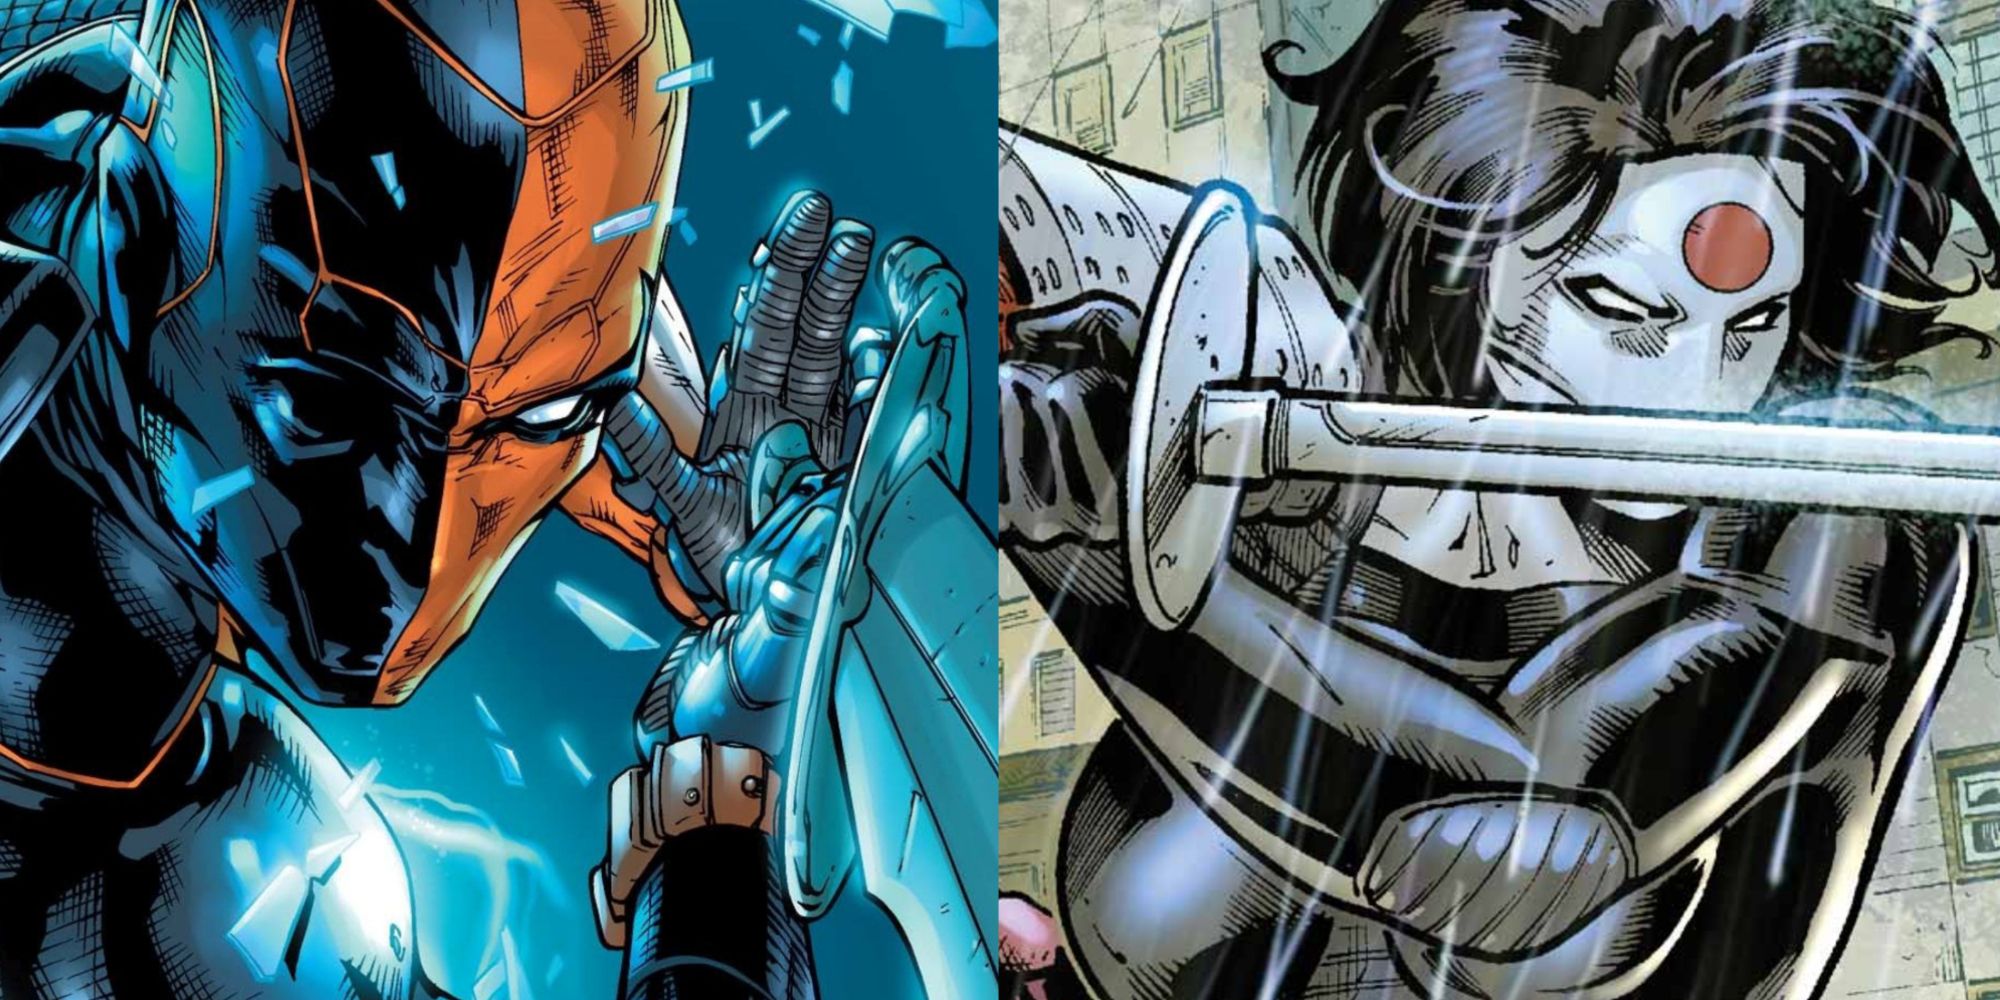 Split image of Deathstroke and Katana wielding swords in DC comics